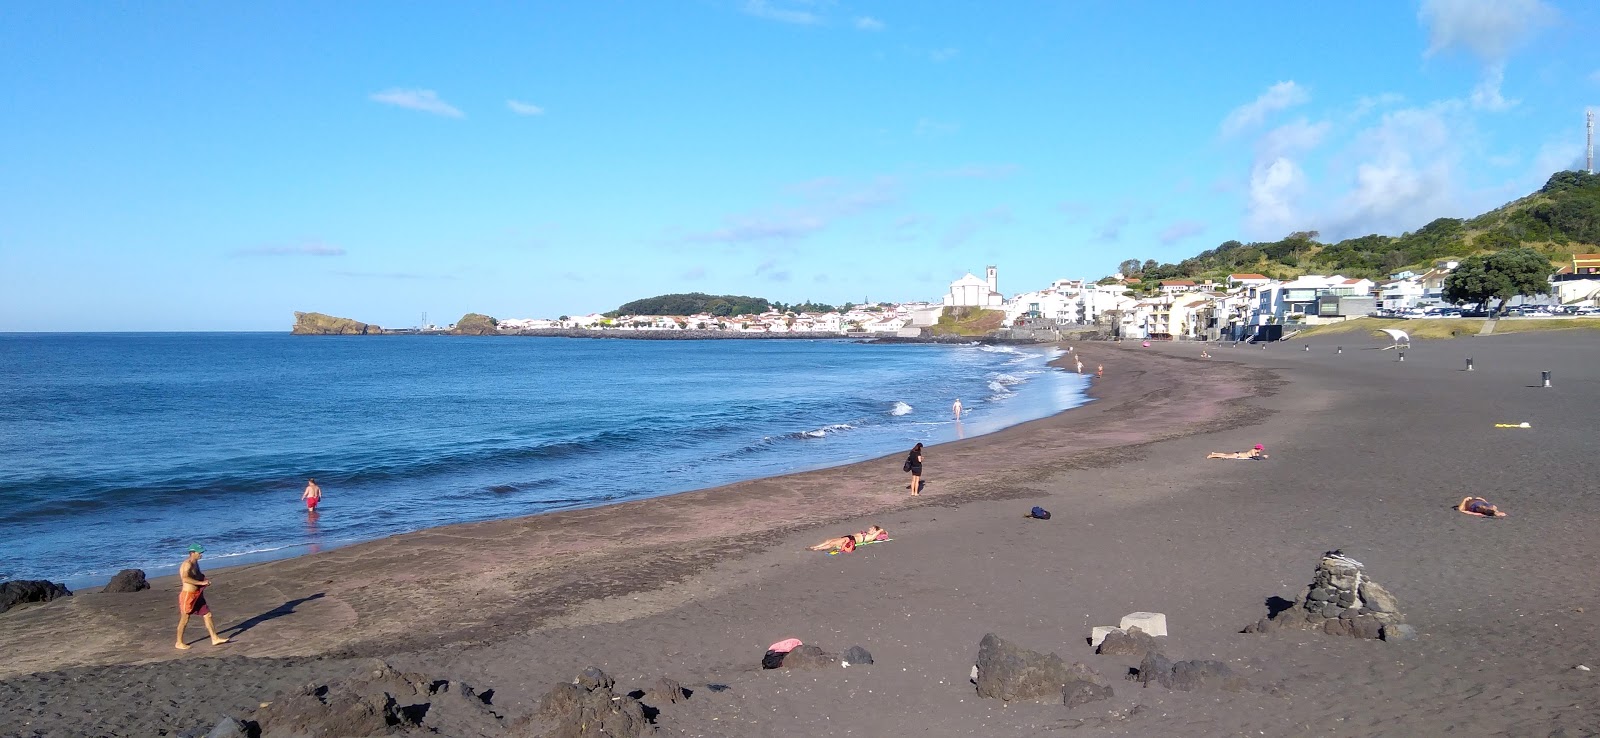 Foto de Praia das Milicias - lugar popular entre los conocedores del relax